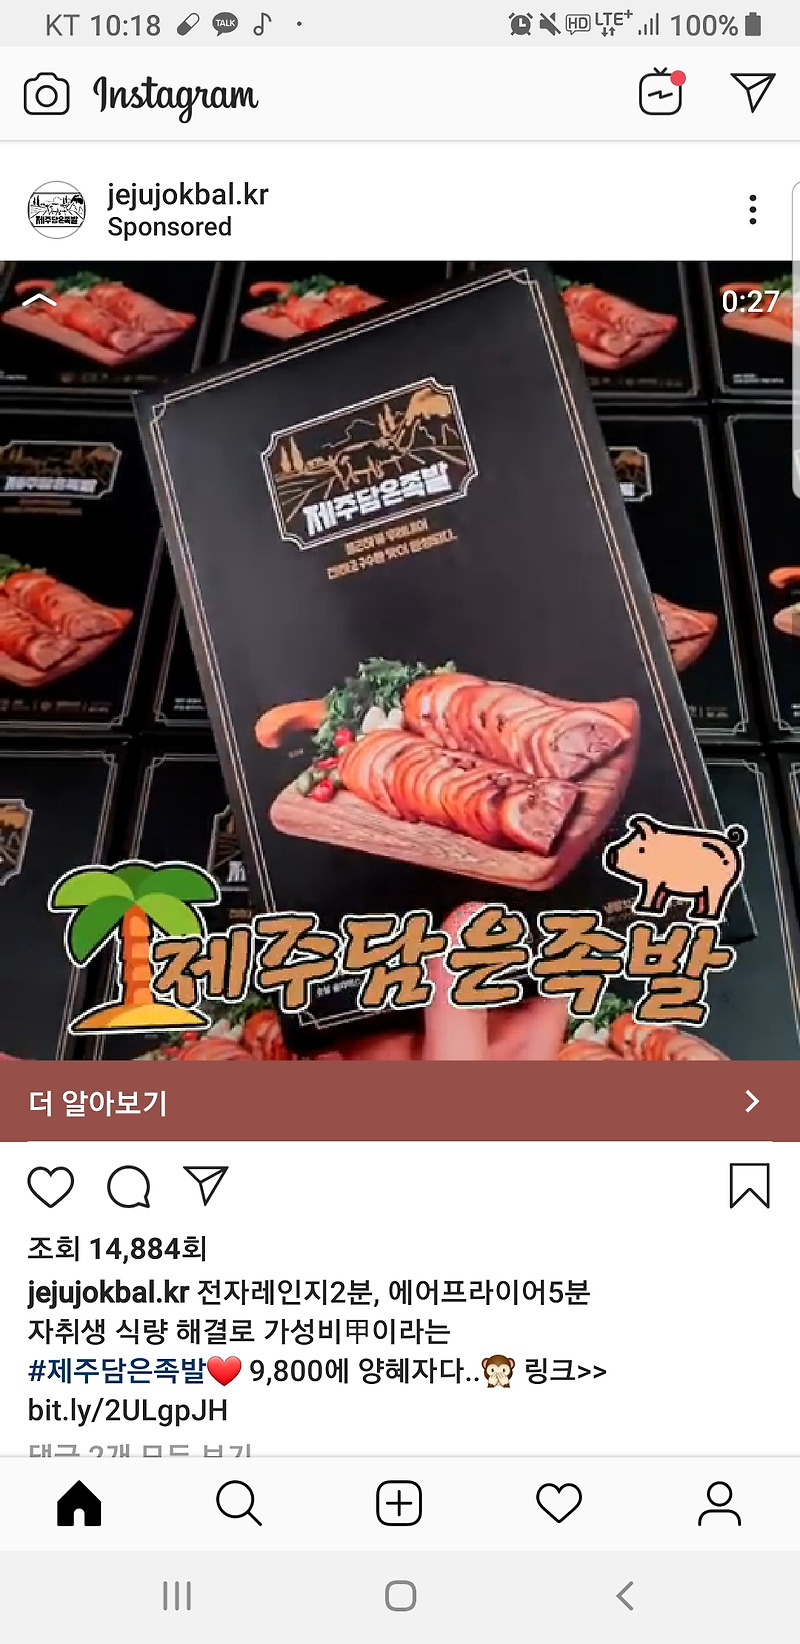 [제주담은족발] 최근 광고로 핫했던 제주담은족발 현실 후기!!